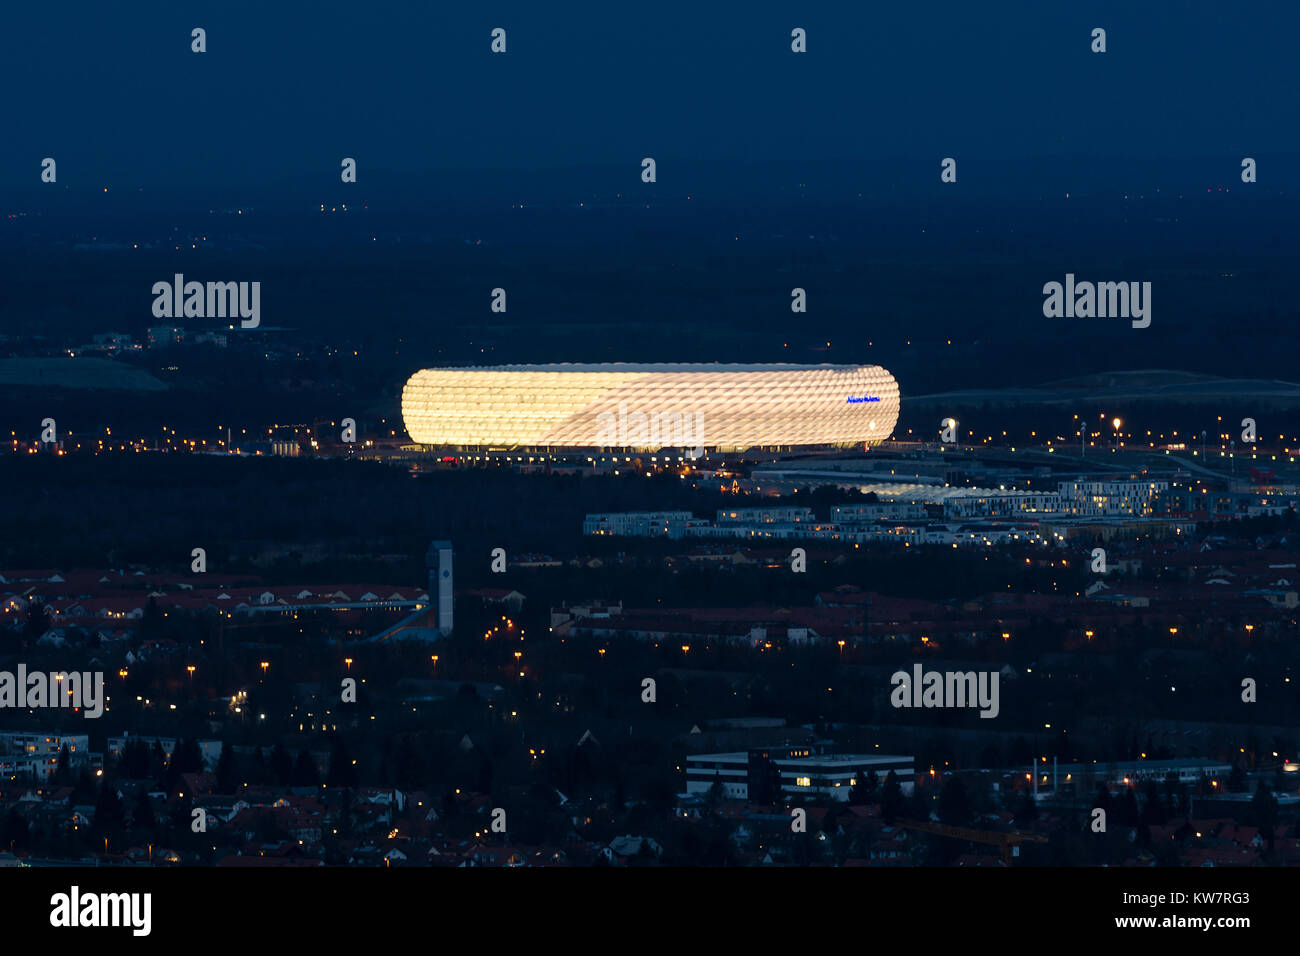 Munich, Allemagne - le 14 décembre 2016 : nuit vue aérienne du stade de football Allianz Arena extérieur le deuxième plus grand arena en Allemagne Banque D'Images